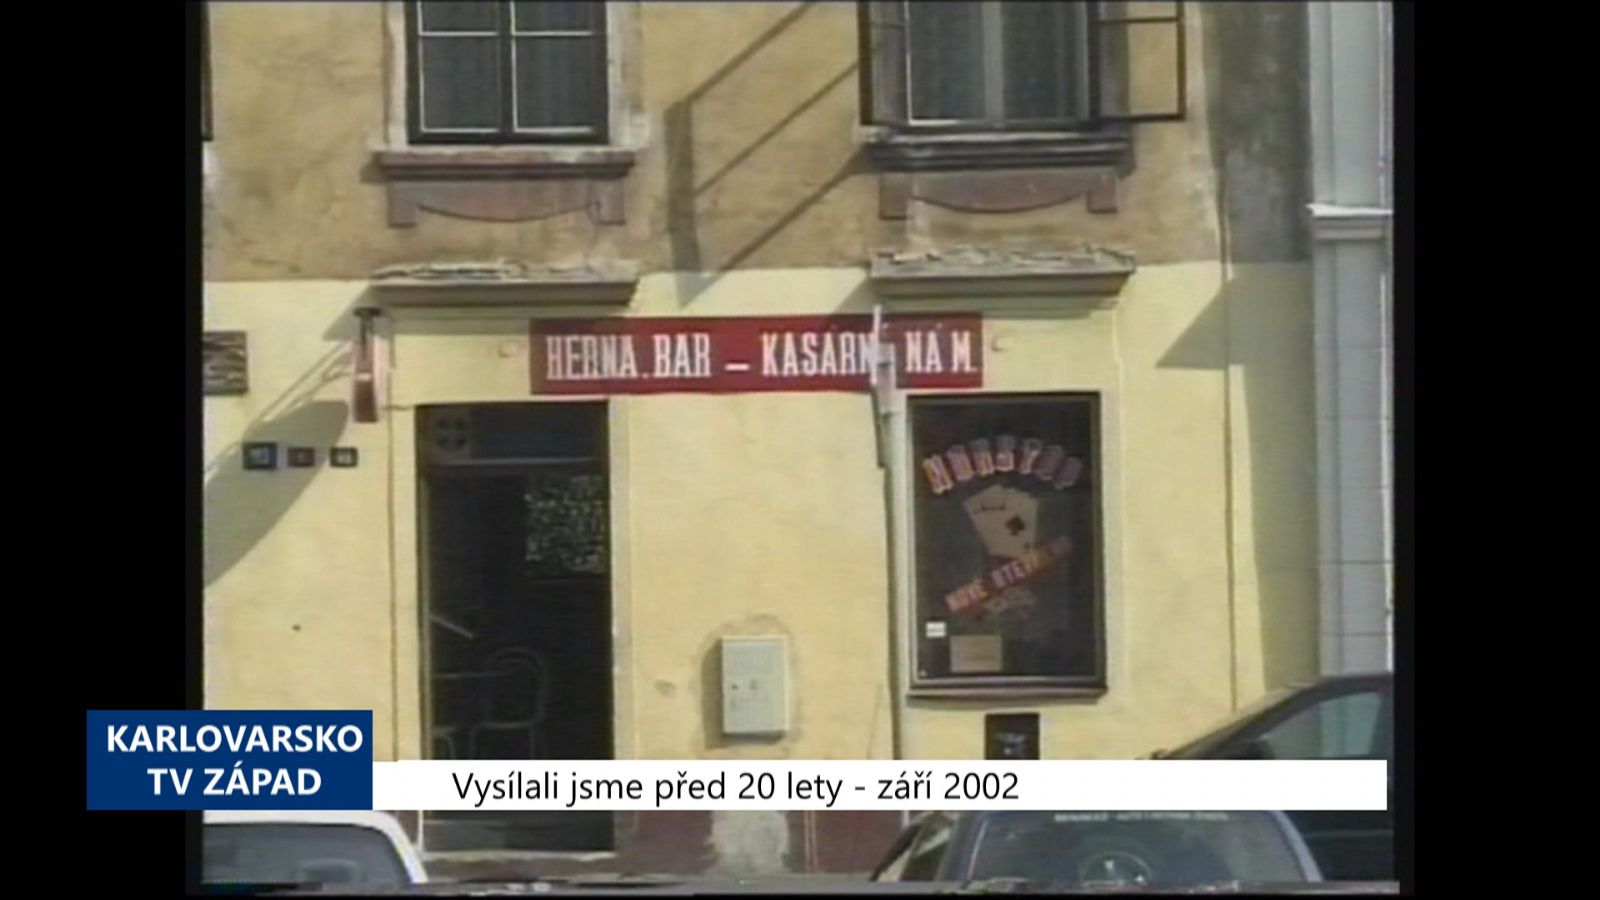 2002 – Cheb: Nová vyhláška omezuje provozní dobu v centru (TV Západ)